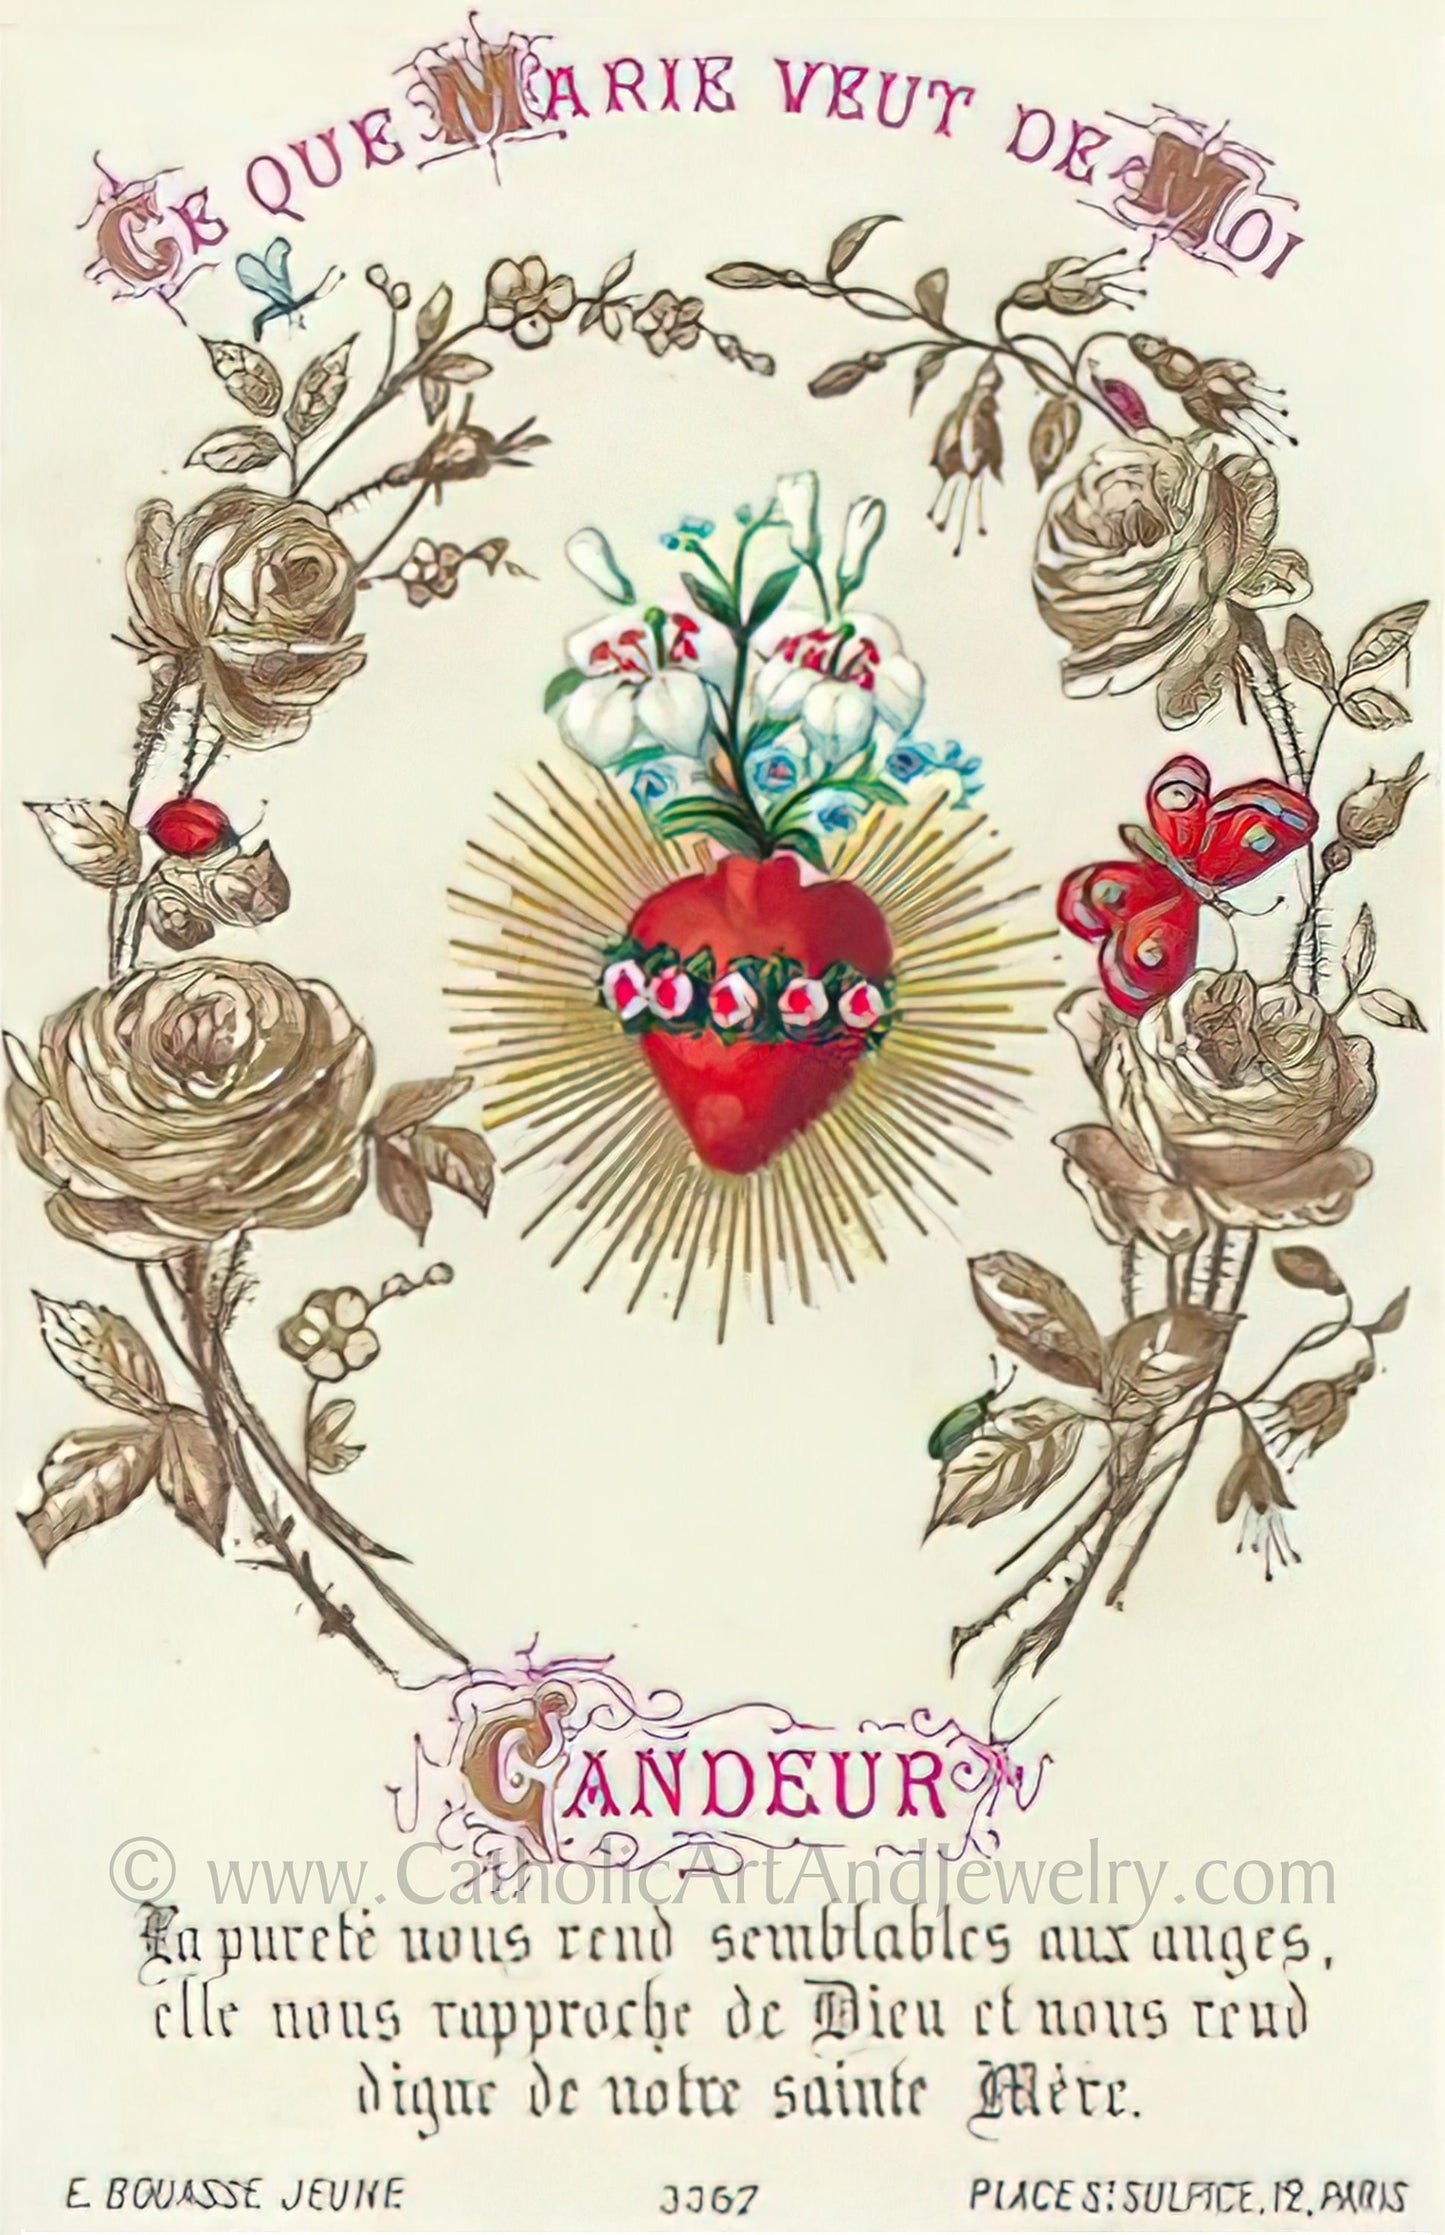 Candor – Based on a Vintage French Holy Card – Catholic Art